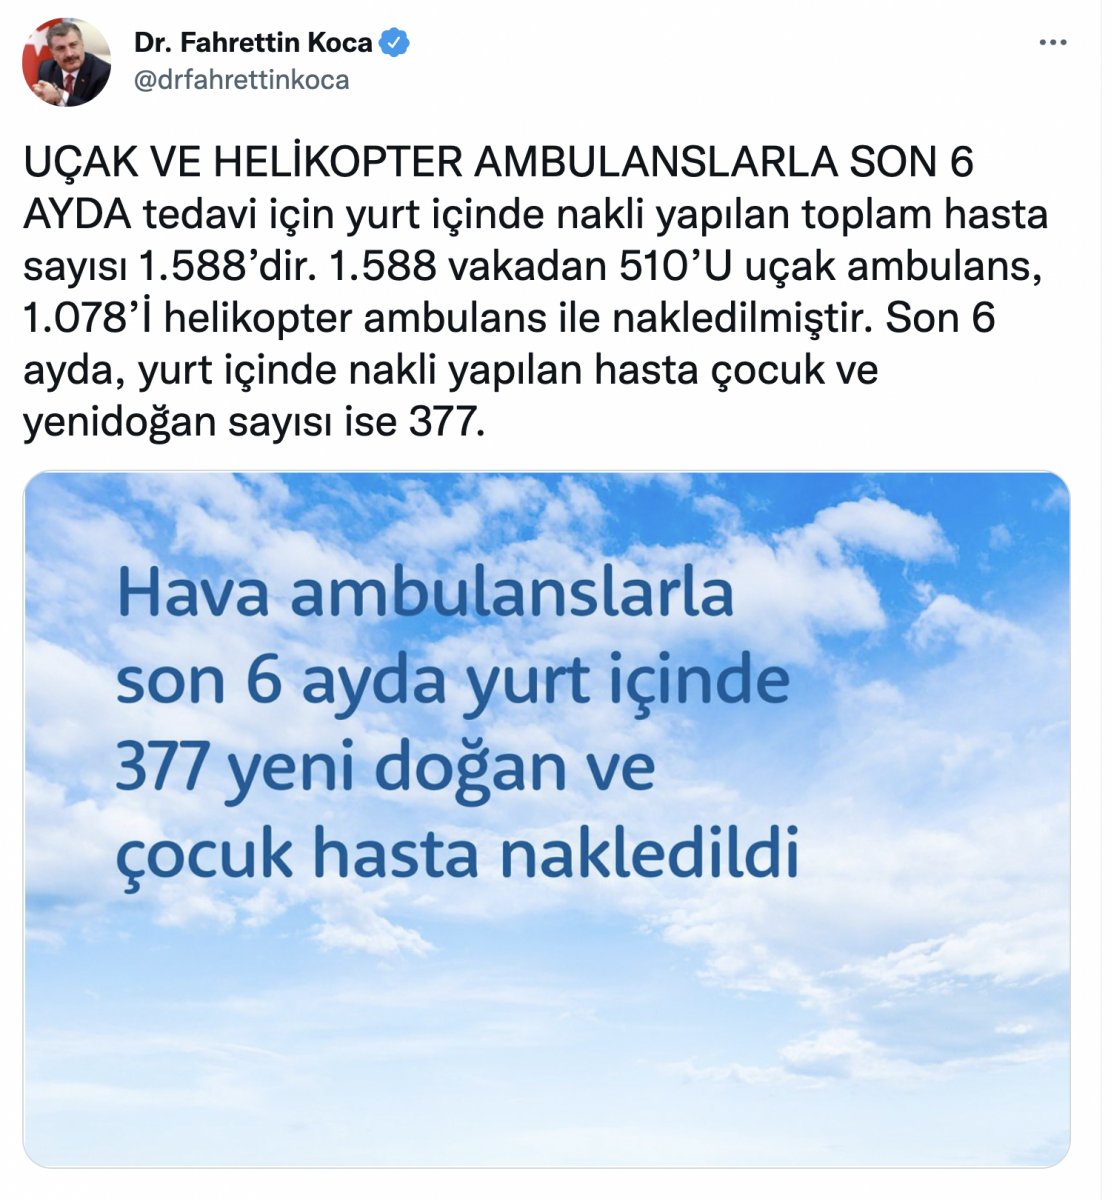 Fahrettin Koca: 1588 hastanın nakli uçak ve helikopterle yapıldı #1